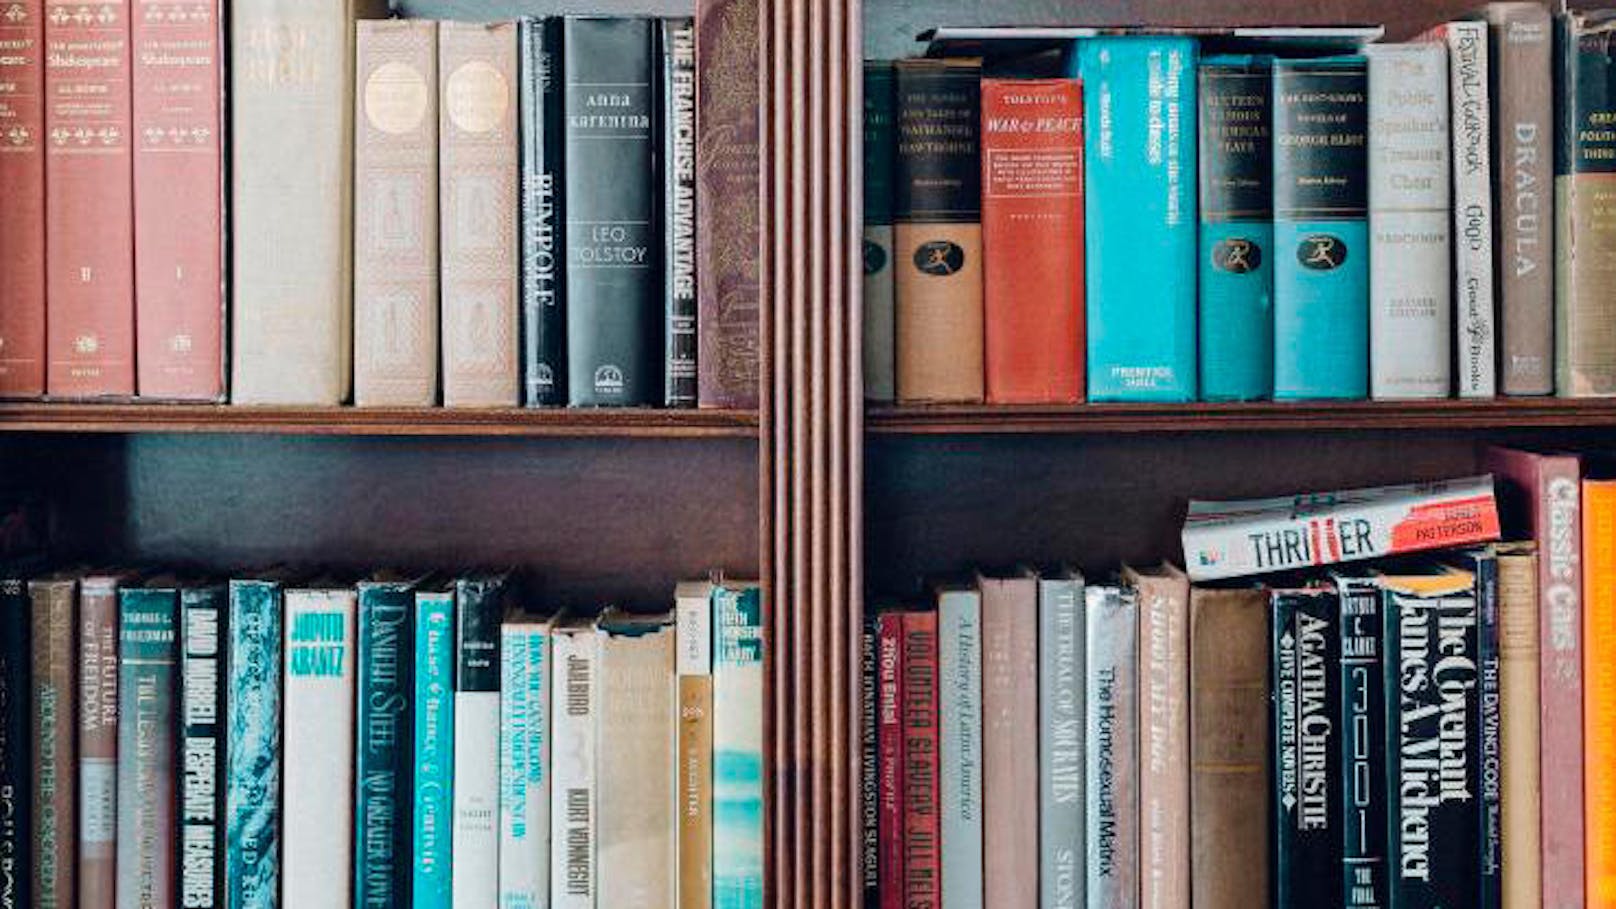 <b>Sortiere dein Bücherregal:</b>
Es gibt viele Wege, Bücher zu sortieren: Alphabetisch, nach Genre, nach Größe - oder nach der Farbe des Einbands. Gehe deine Bücher durch, sortiere die schlechten aus und spende sie an Brockenhäuser oder Bibliotheken. So gibt's auch mehr Platz für Neues.